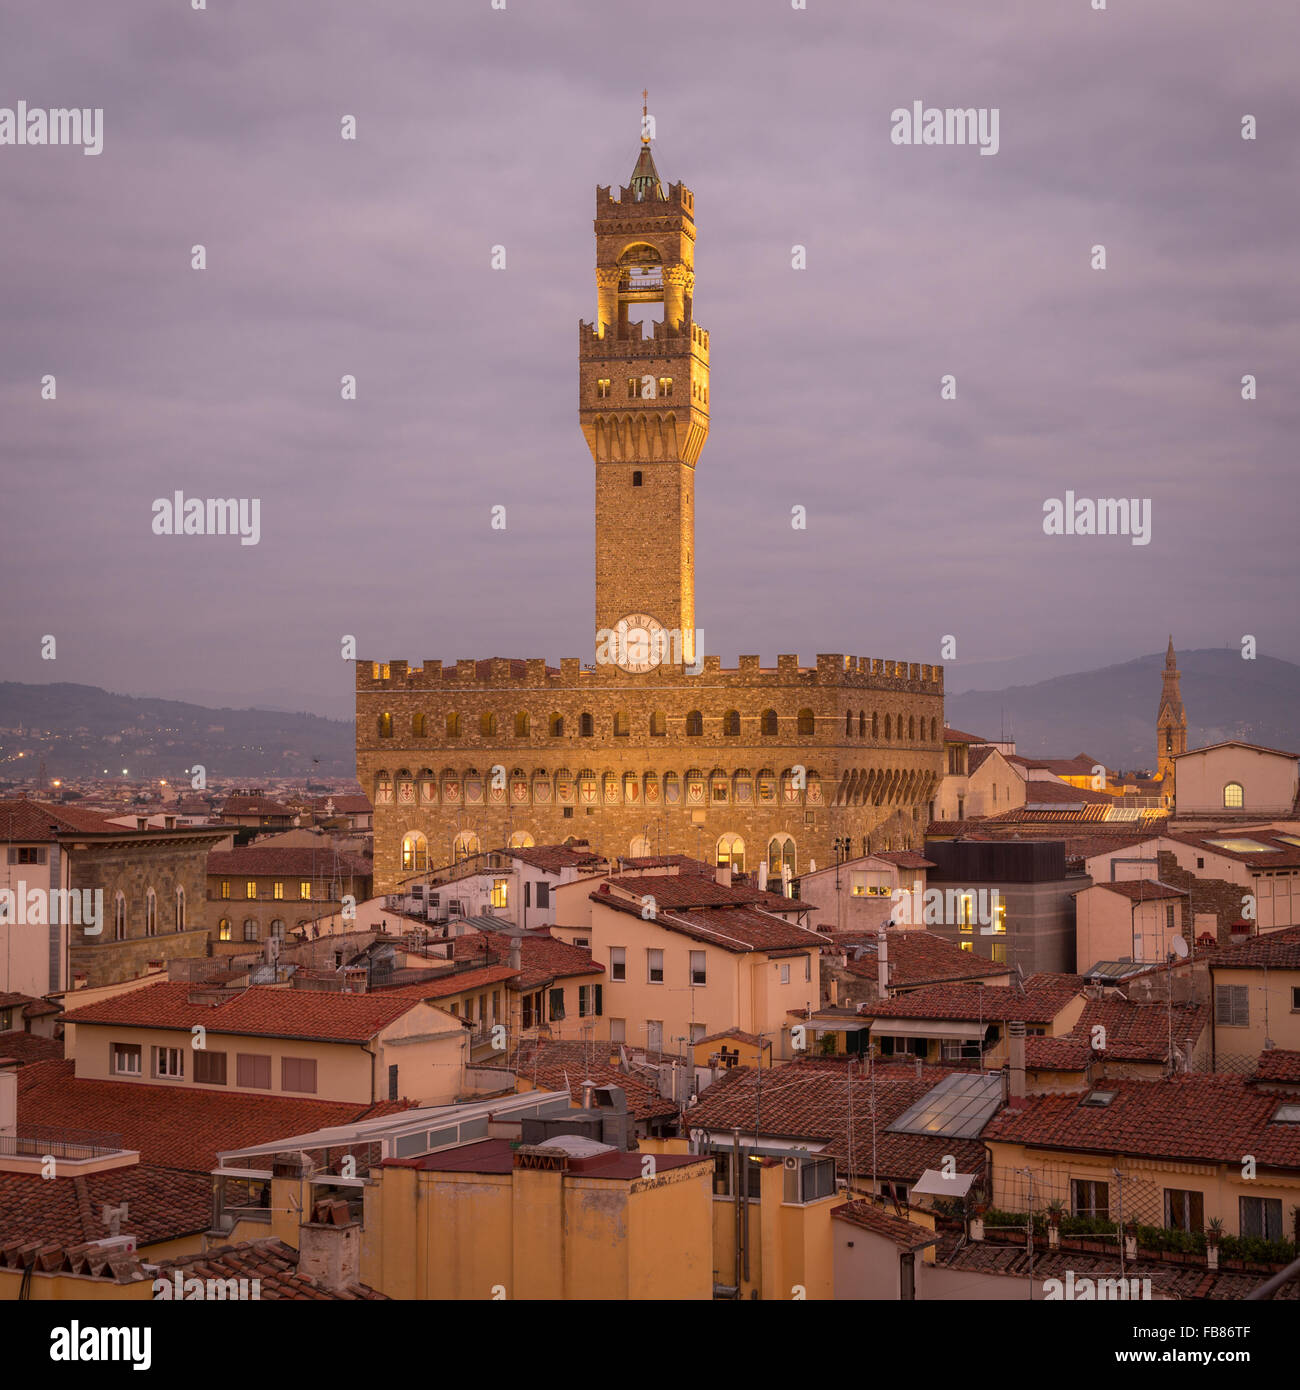 Palazzo Vecchio at dusk, Florence, Tuscany, Italy Stock Photo